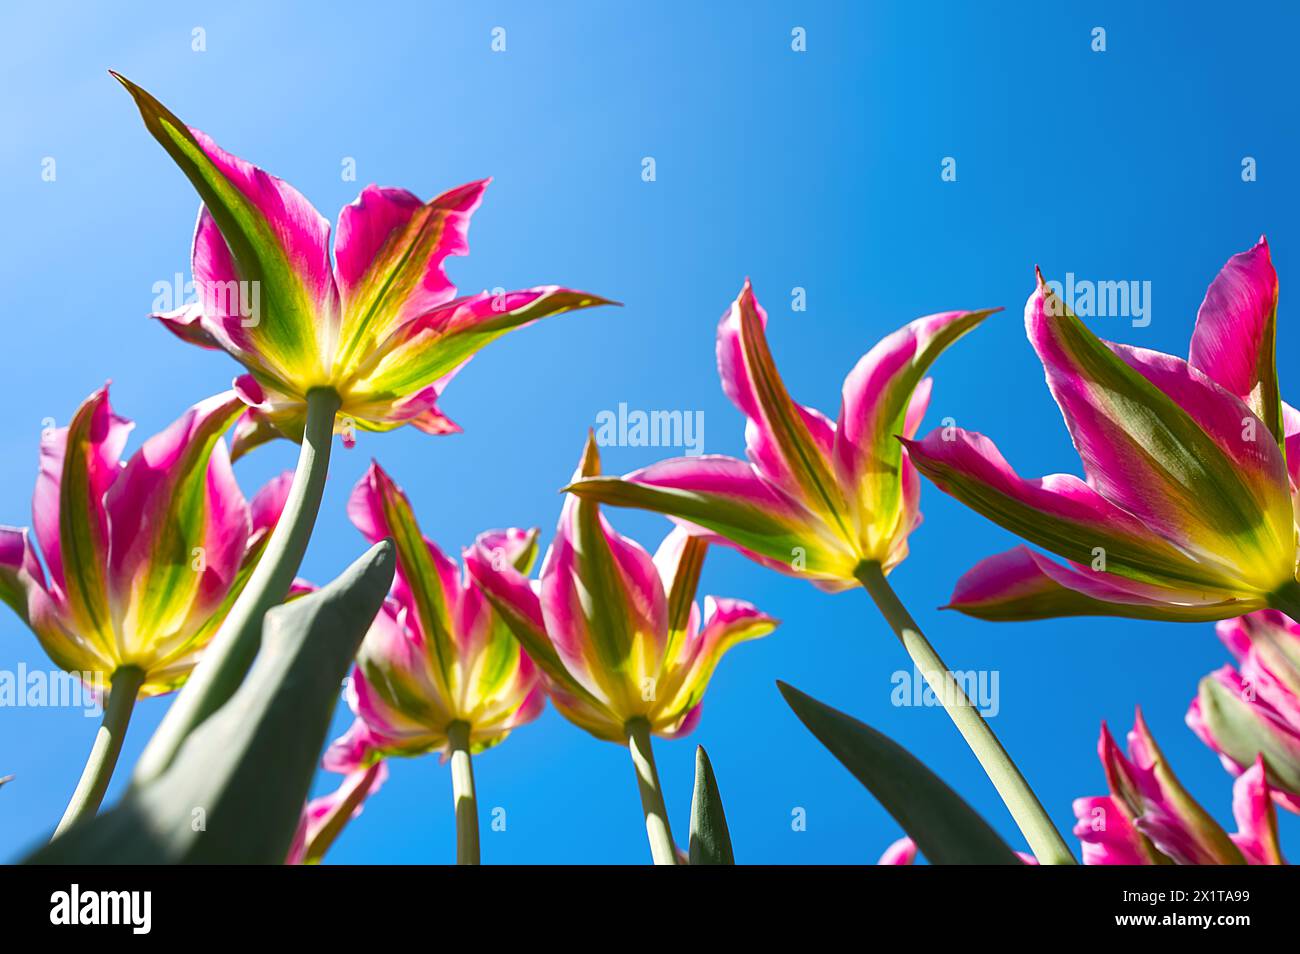 Gros plan de tulipes envolez-vous en couleur rose contre le ciel bleu Banque D'Images